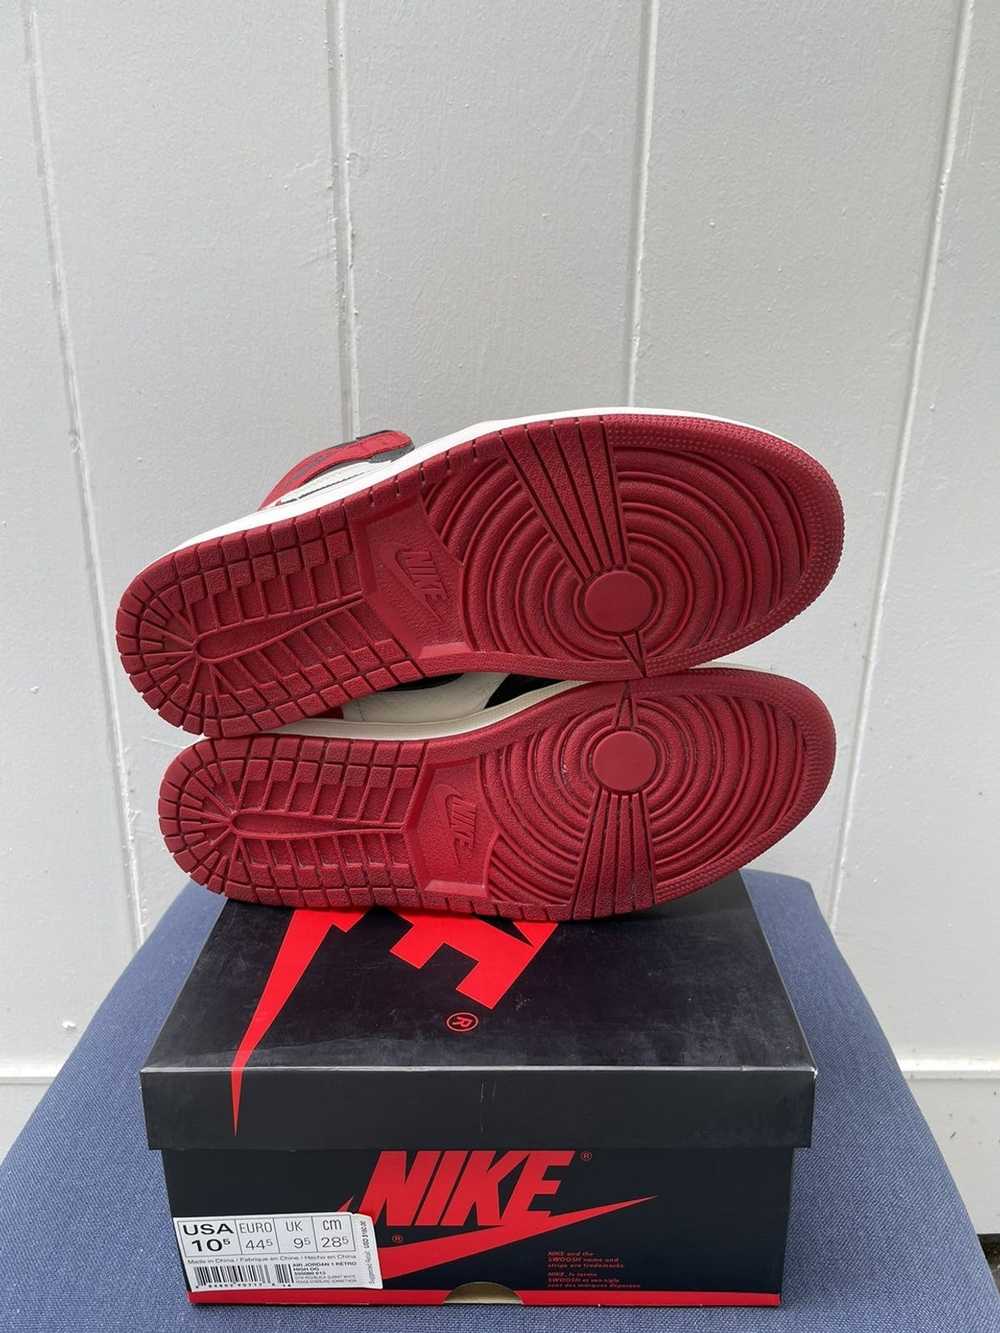 Jordan Brand × Nike Jordan 1 High Bred Toe 2018 - image 7